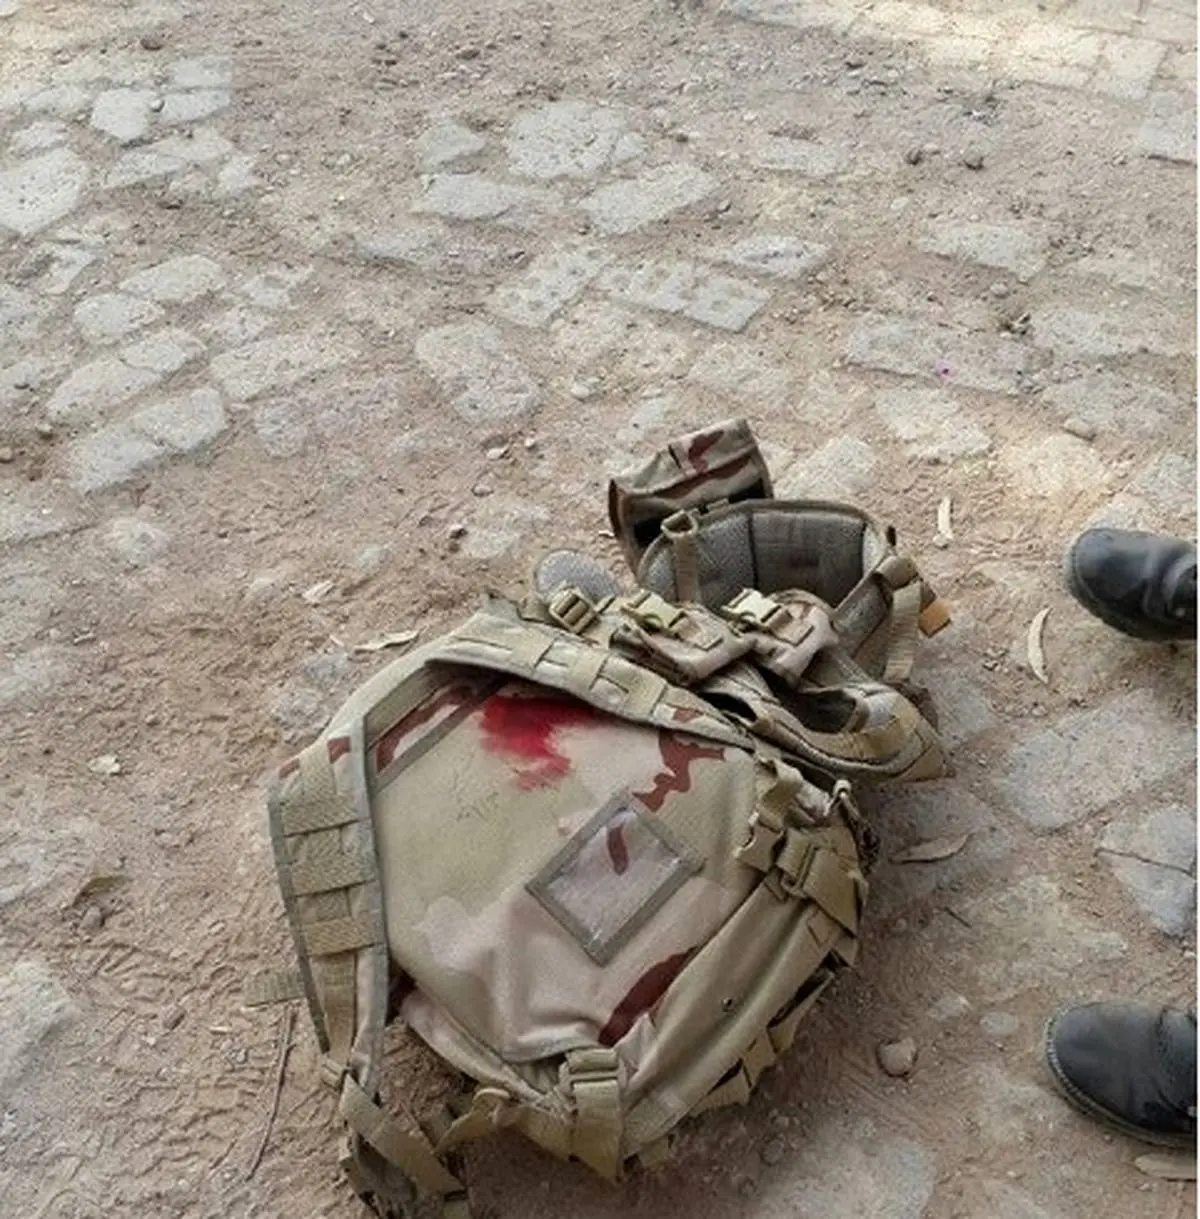 جزئیات حمله تروریستی اهواز از زبان سخنگوی سپاه + تصاویر